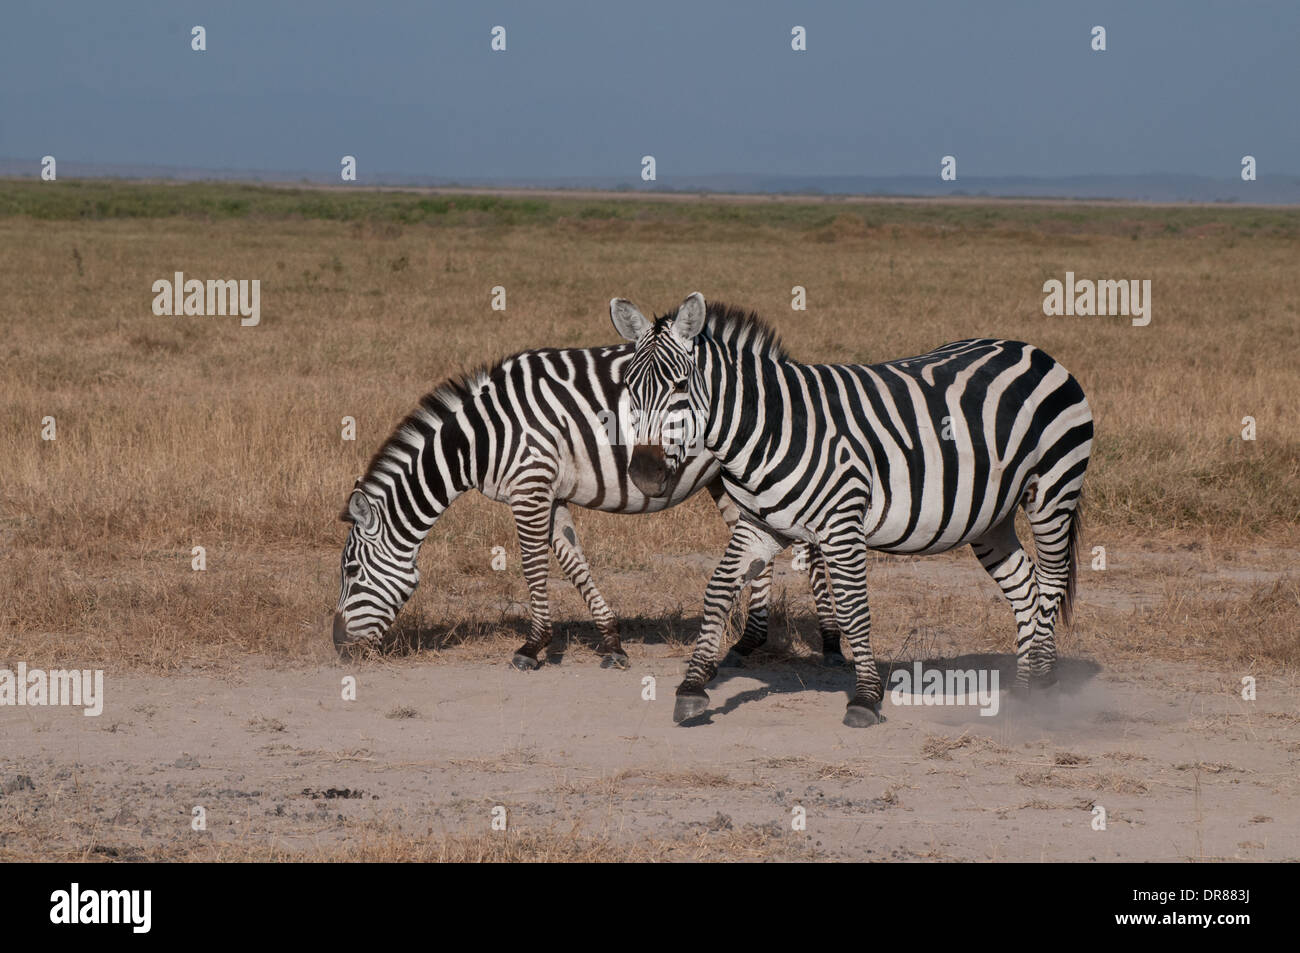 Deux zèbres commun dans le Parc national Amboseli Kenya Afrique de l'Est Banque D'Images